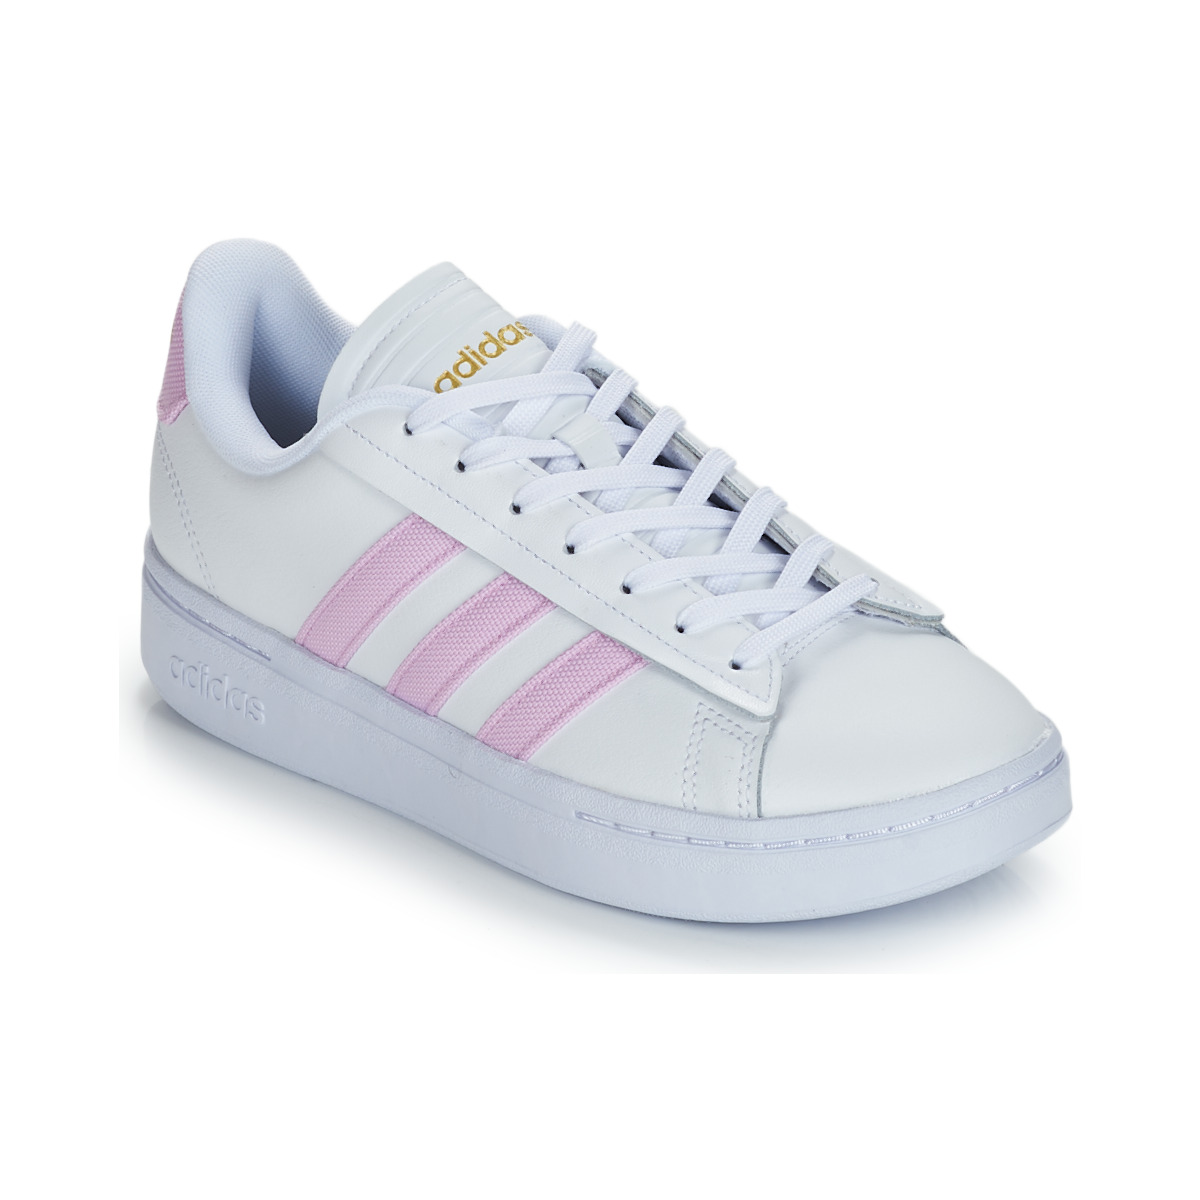 Παπούτσια Γυναίκα Χαμηλά Sneakers Adidas Sportswear GRAND COURT ALPHA Άσπρο / Ροζ